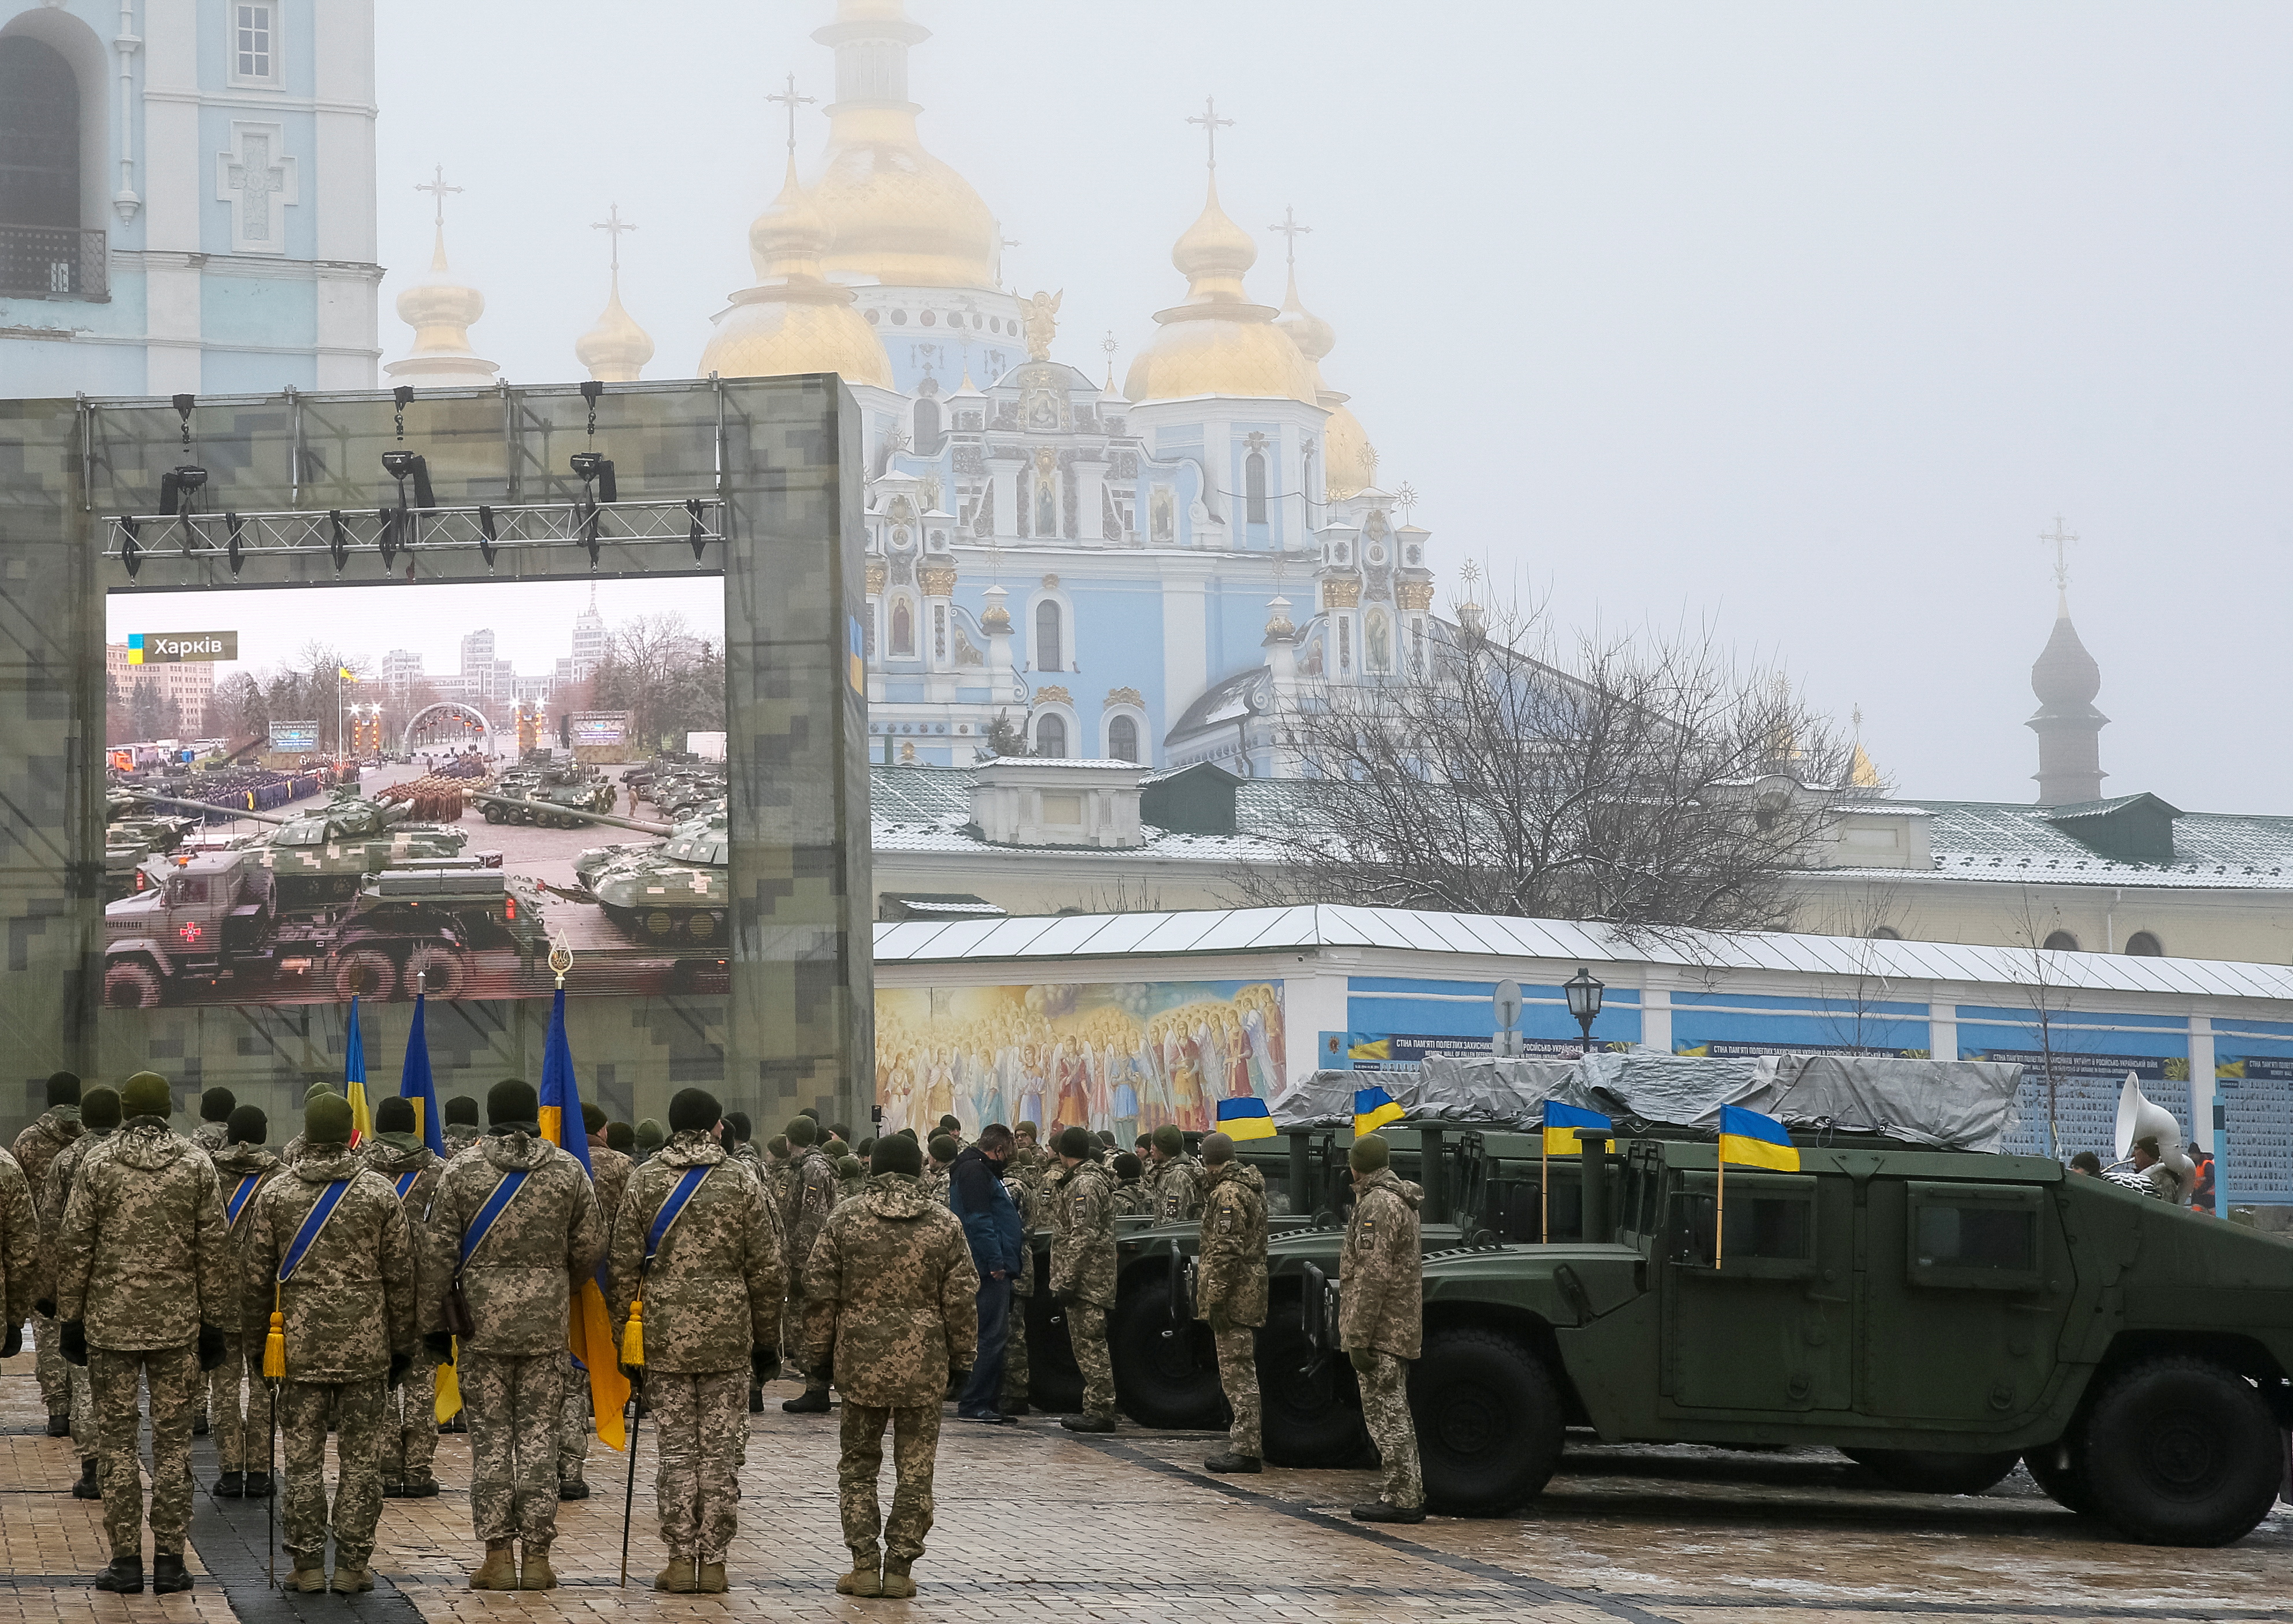 Ουκρανοί στρατιώτες παρευρίσκονται σε πρόβα επίσημης τελετής παράδοσης τανκ, τεθωρακισμένων οχημάτων προσωπικού και στρατιωτικών οχημάτων στις ουκρανικές Ένοπλες Δυνάμεις καθώς η χώρα γιορτάζει την Ημέρα Στρατού στο Κίεβο της Ουκρανίας, 6 Δεκεμβρίου 2021. REUTERS/Gleb Garanich